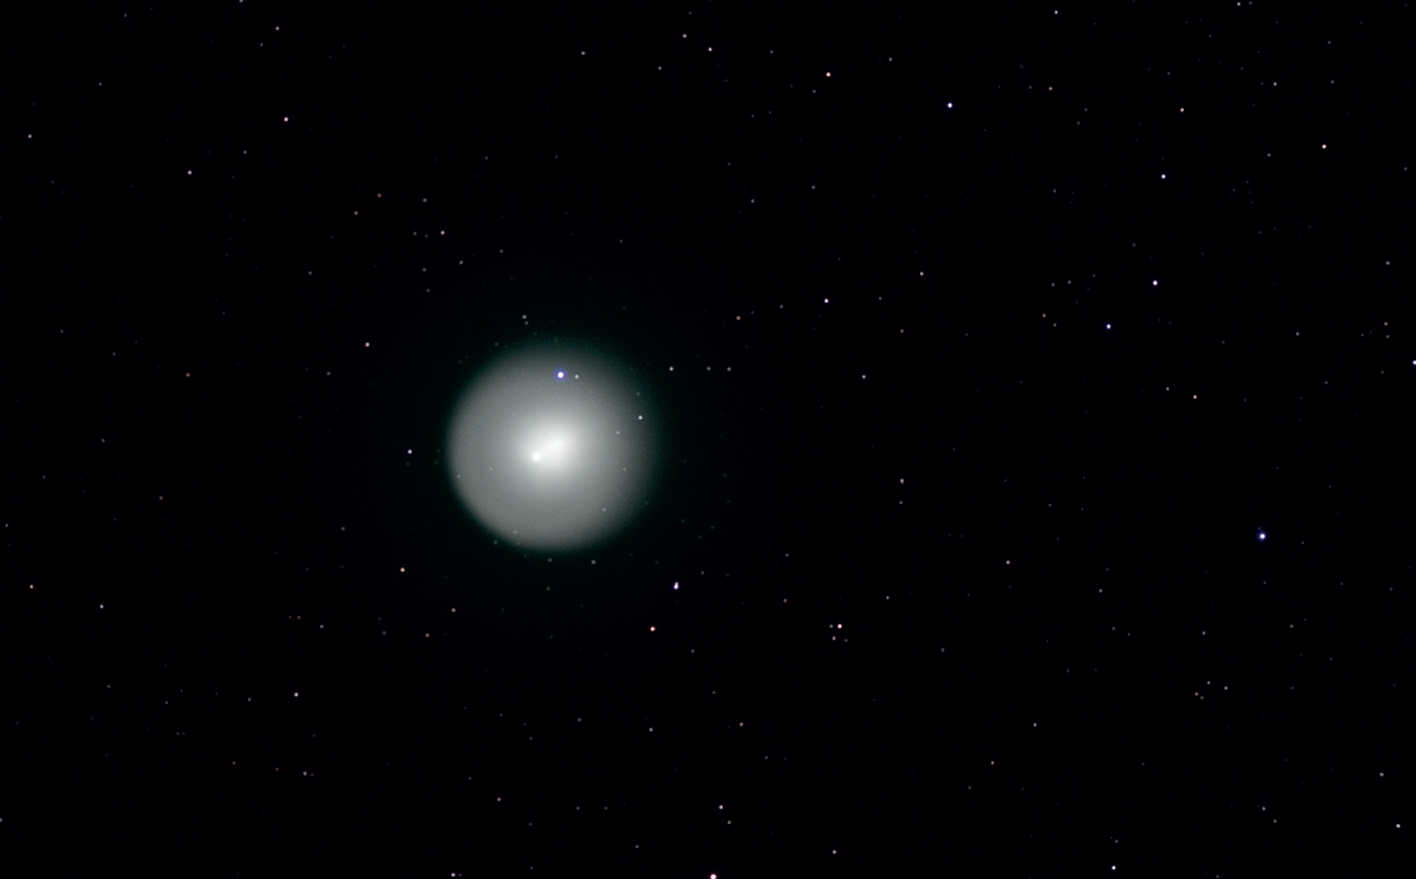 En 2007, la comète périodique 17P (Holmes) dominait le ciel automnal. La forme nette et la taille de la tête de la comète apparaissent sur cette photo en noir et blanc, qui a été réalisée le 01/11/2007 avec une caméra CCD refroidie placée sur une lunette Takahashi FS-102. Même si les photos en couleur des comètes scintillant en vert sont typiques, cette photo montre l’attrait tout particulier d’une photo en noir et blanc. U. Dittler